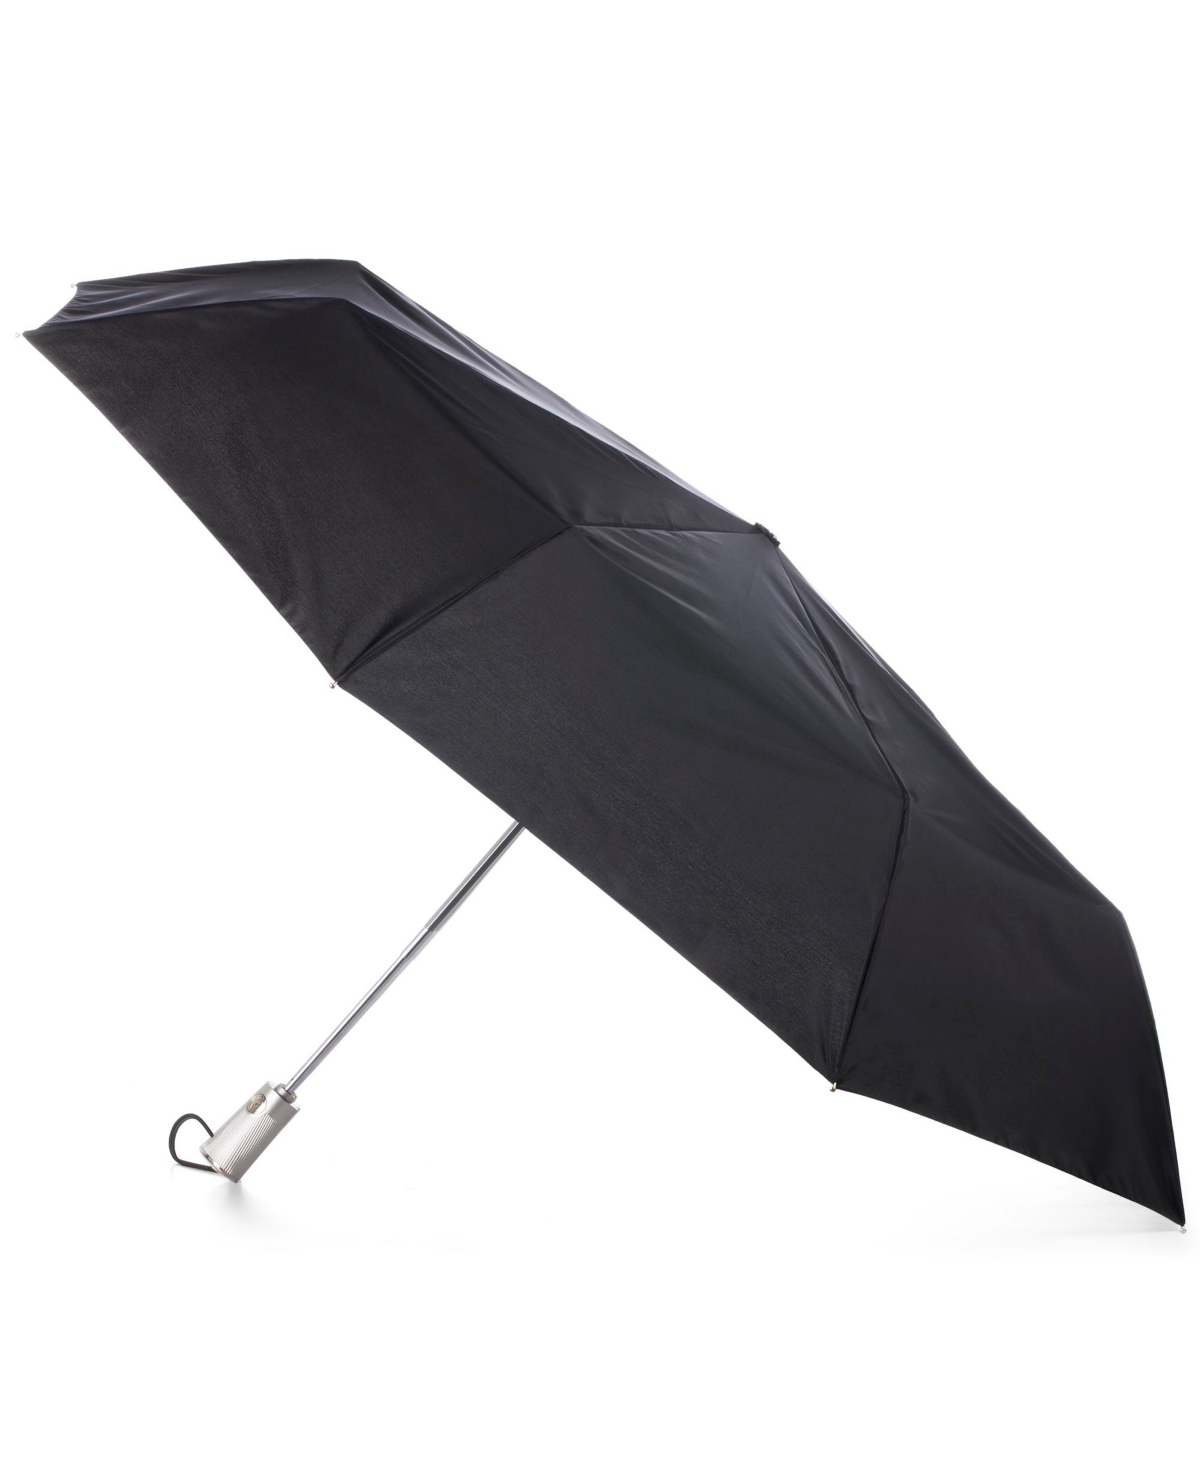 Auto Open Auto Close Umbrella with Sunguard - Black